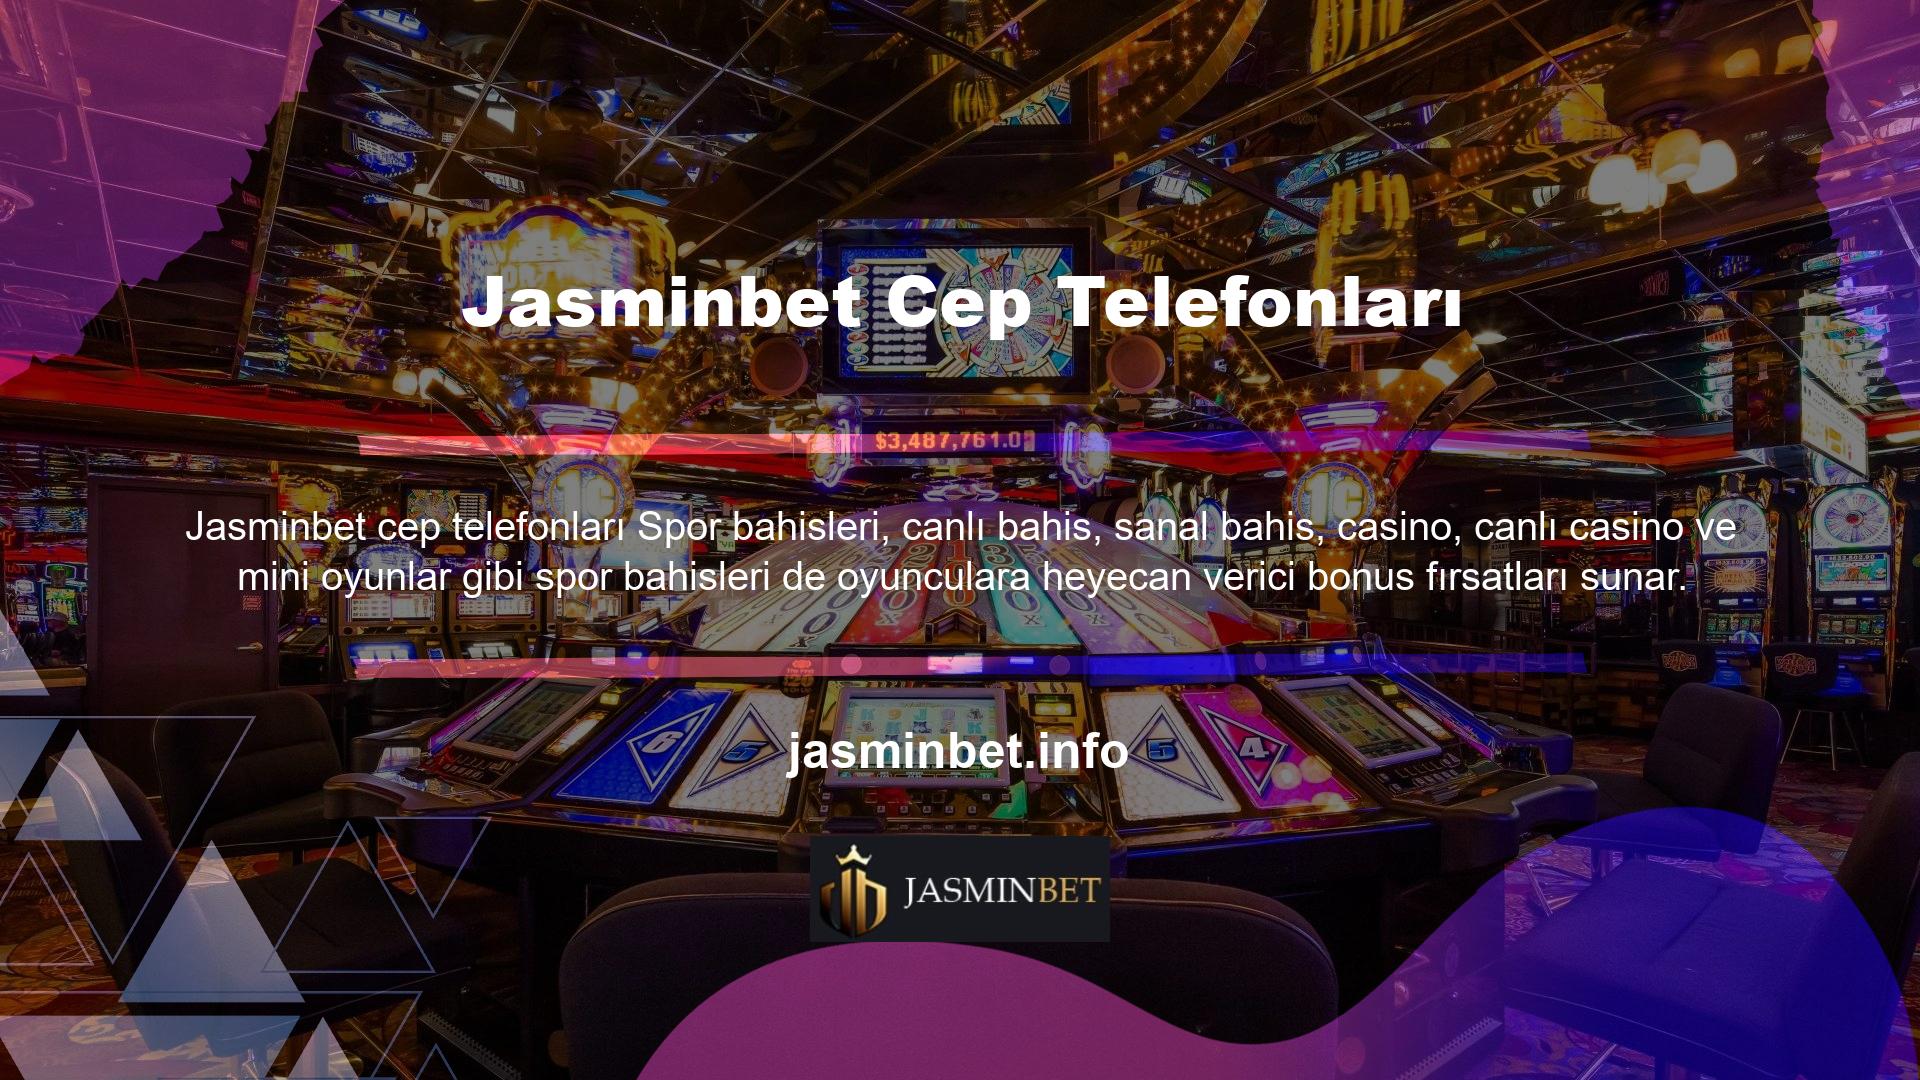 Jasminbet cep telefonları Jasminbet Bahis, tüm kullanıcılara mobil destek sunarak, istedikleri zaman siteye erişmelerini ve bahis yapmalarını sağlar